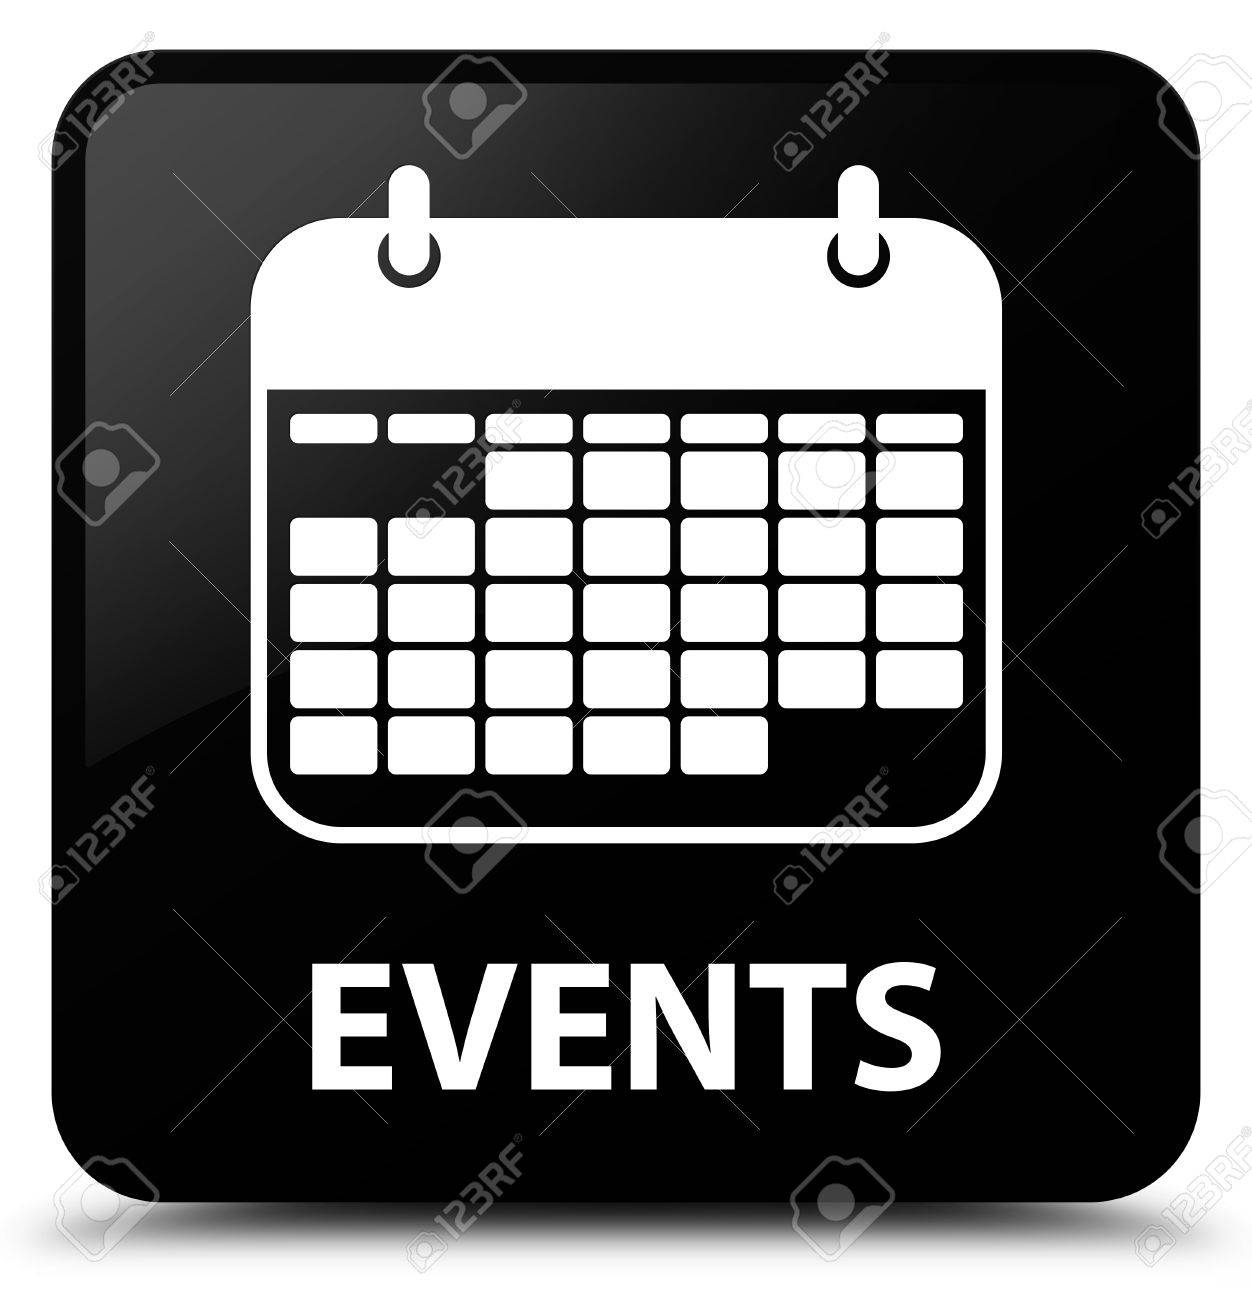 Events (Calendar Icon) Black Square Button Stock Photo, Picture And Event Calendar Icon Free